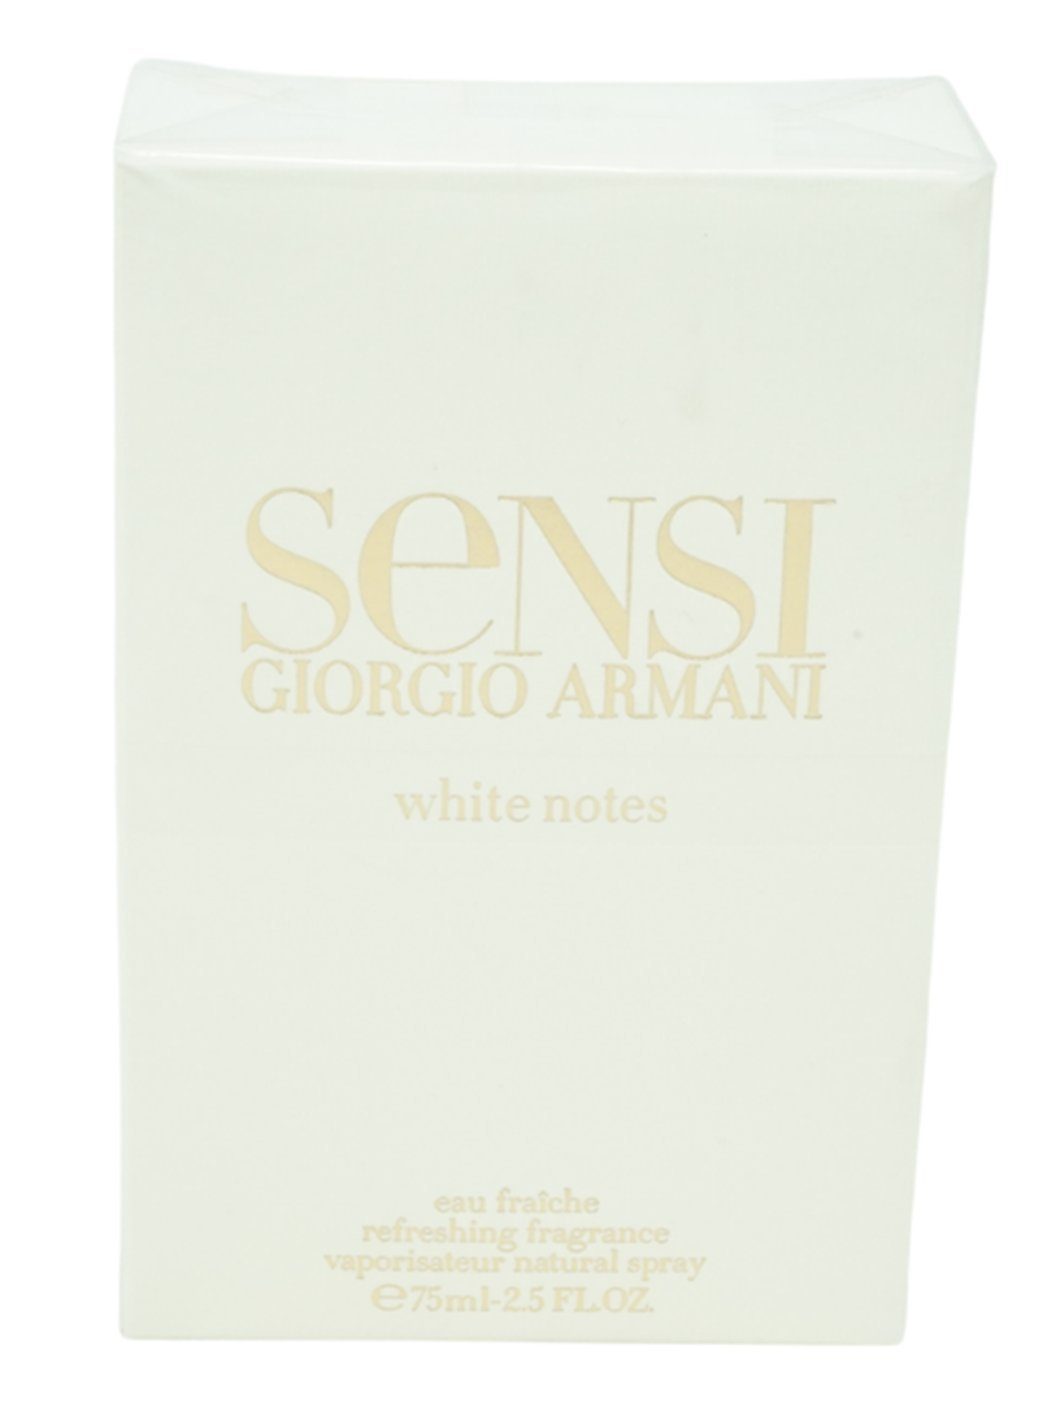 Giorgio Armani Eau Fraiche Giorgio Armani Sensi White Notes Eau Fraiche Spray 75 ml